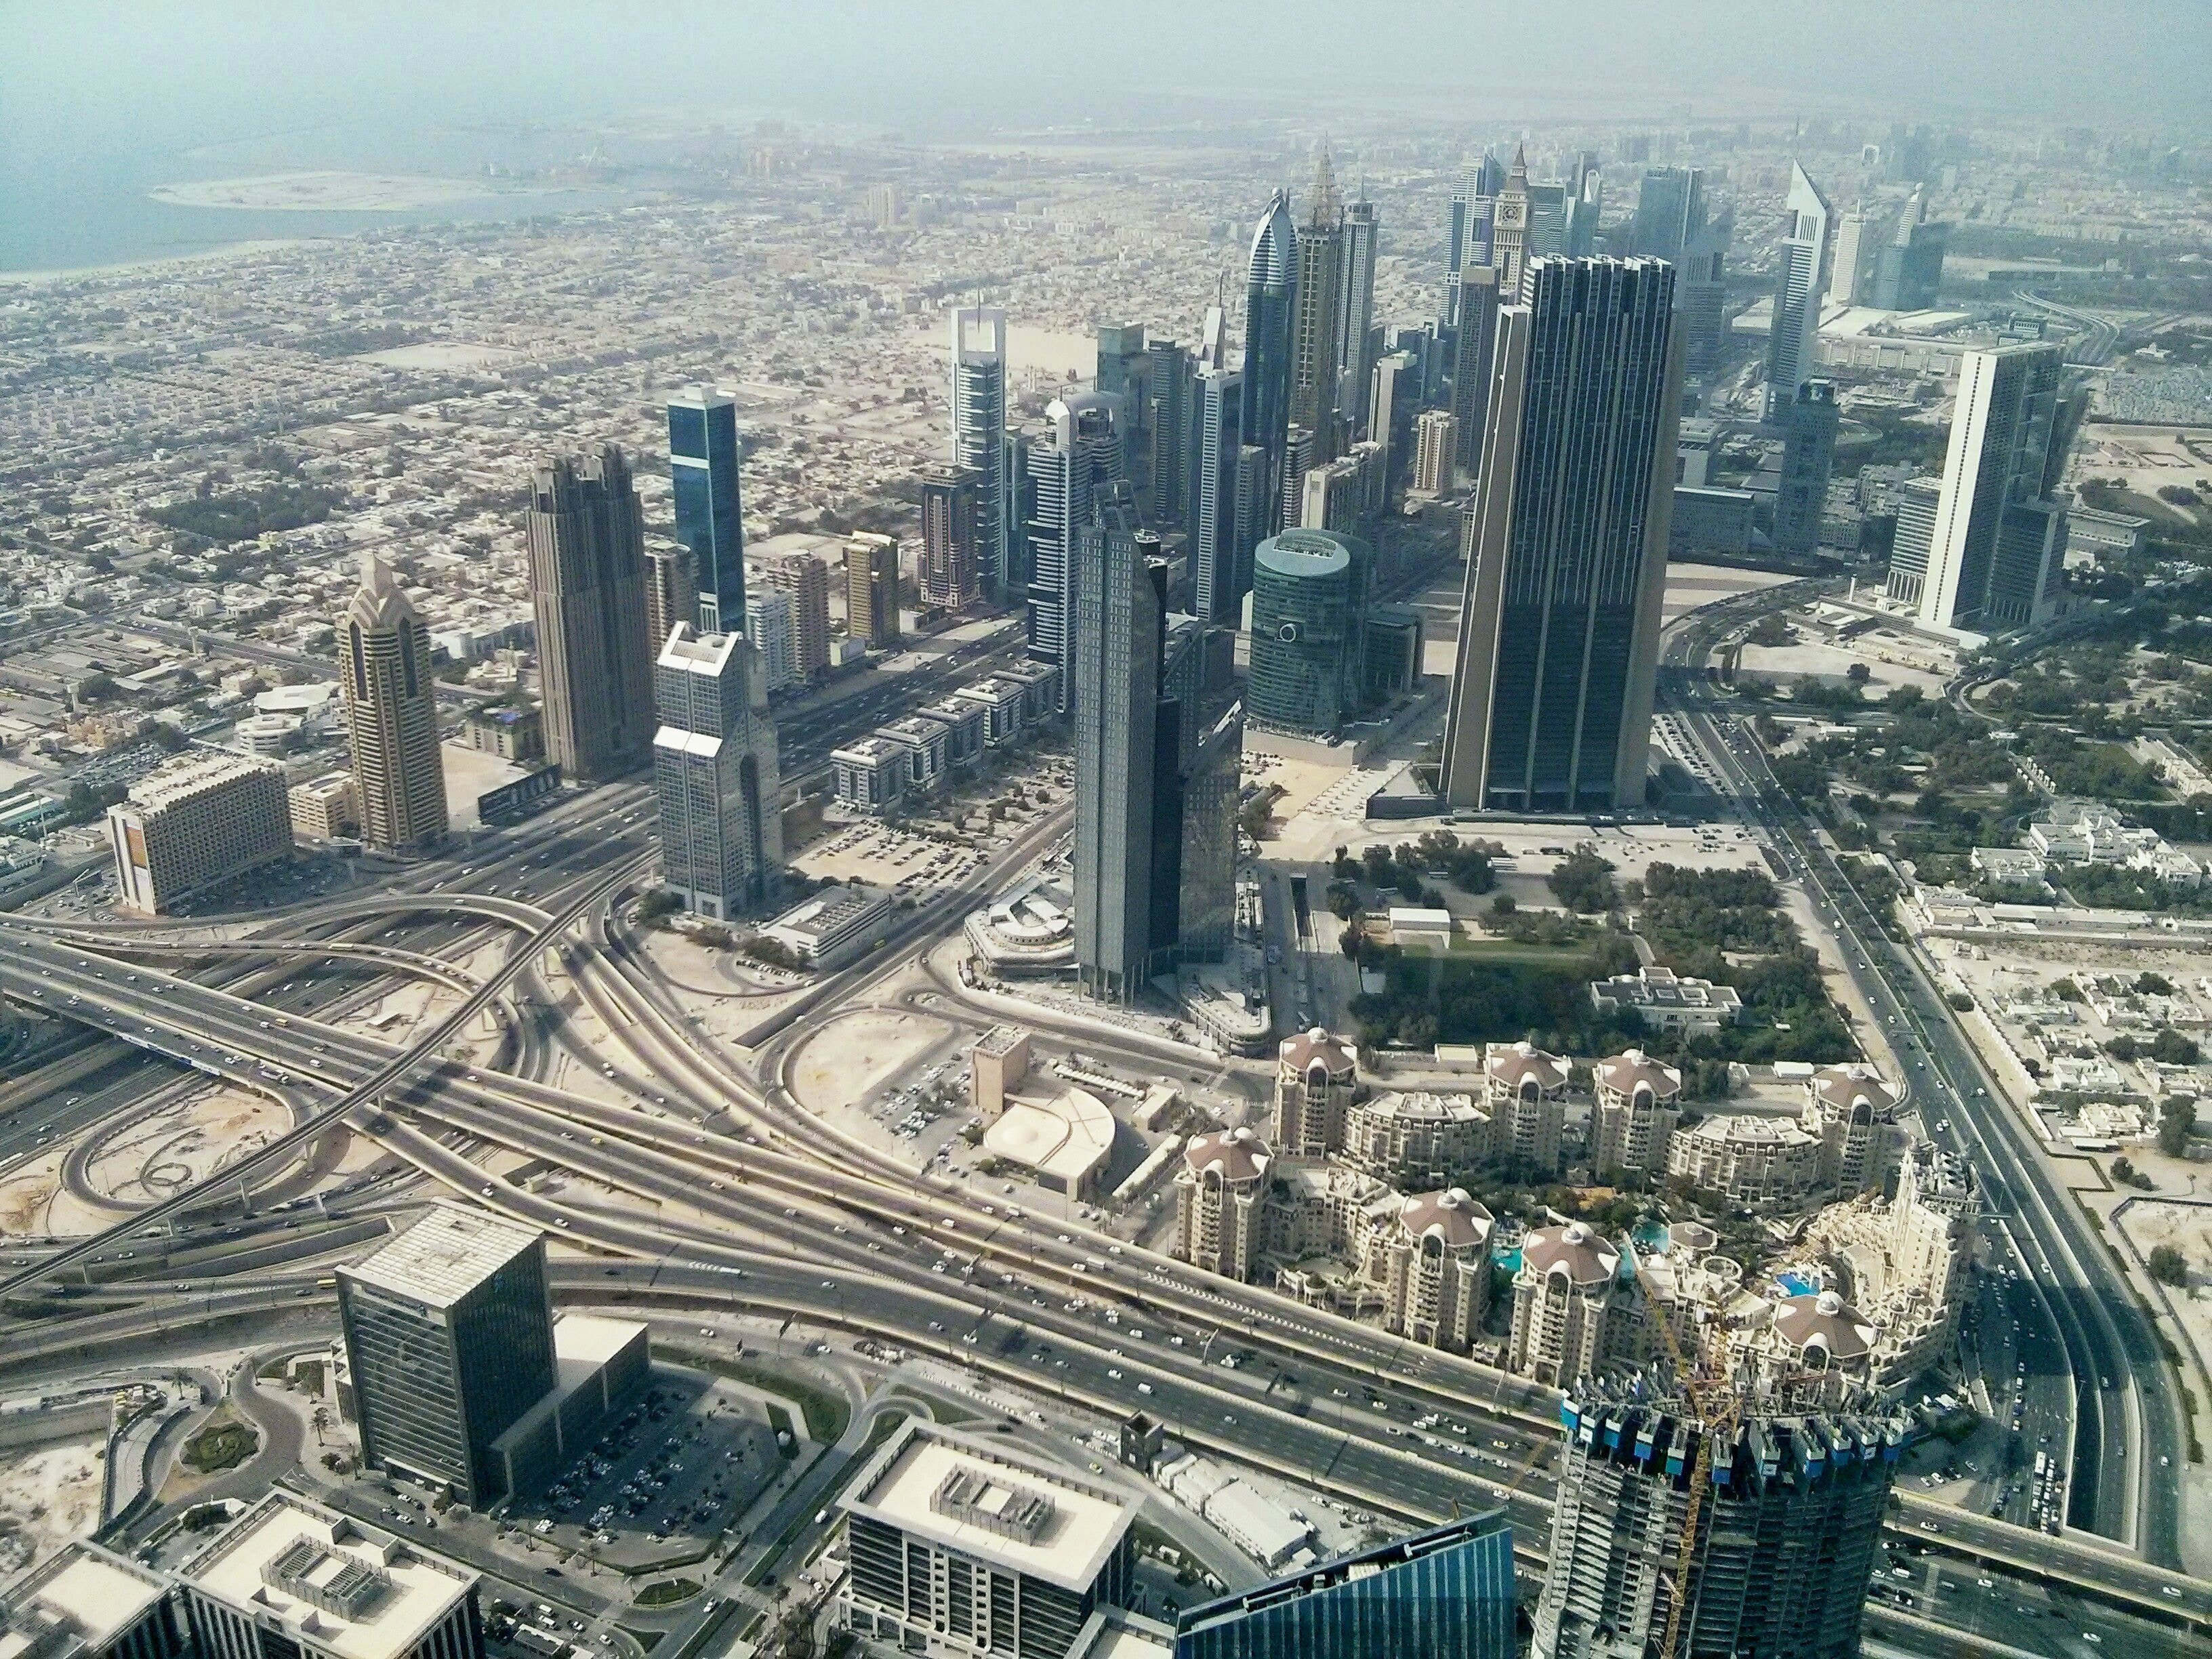 Tax Residency in the UAE